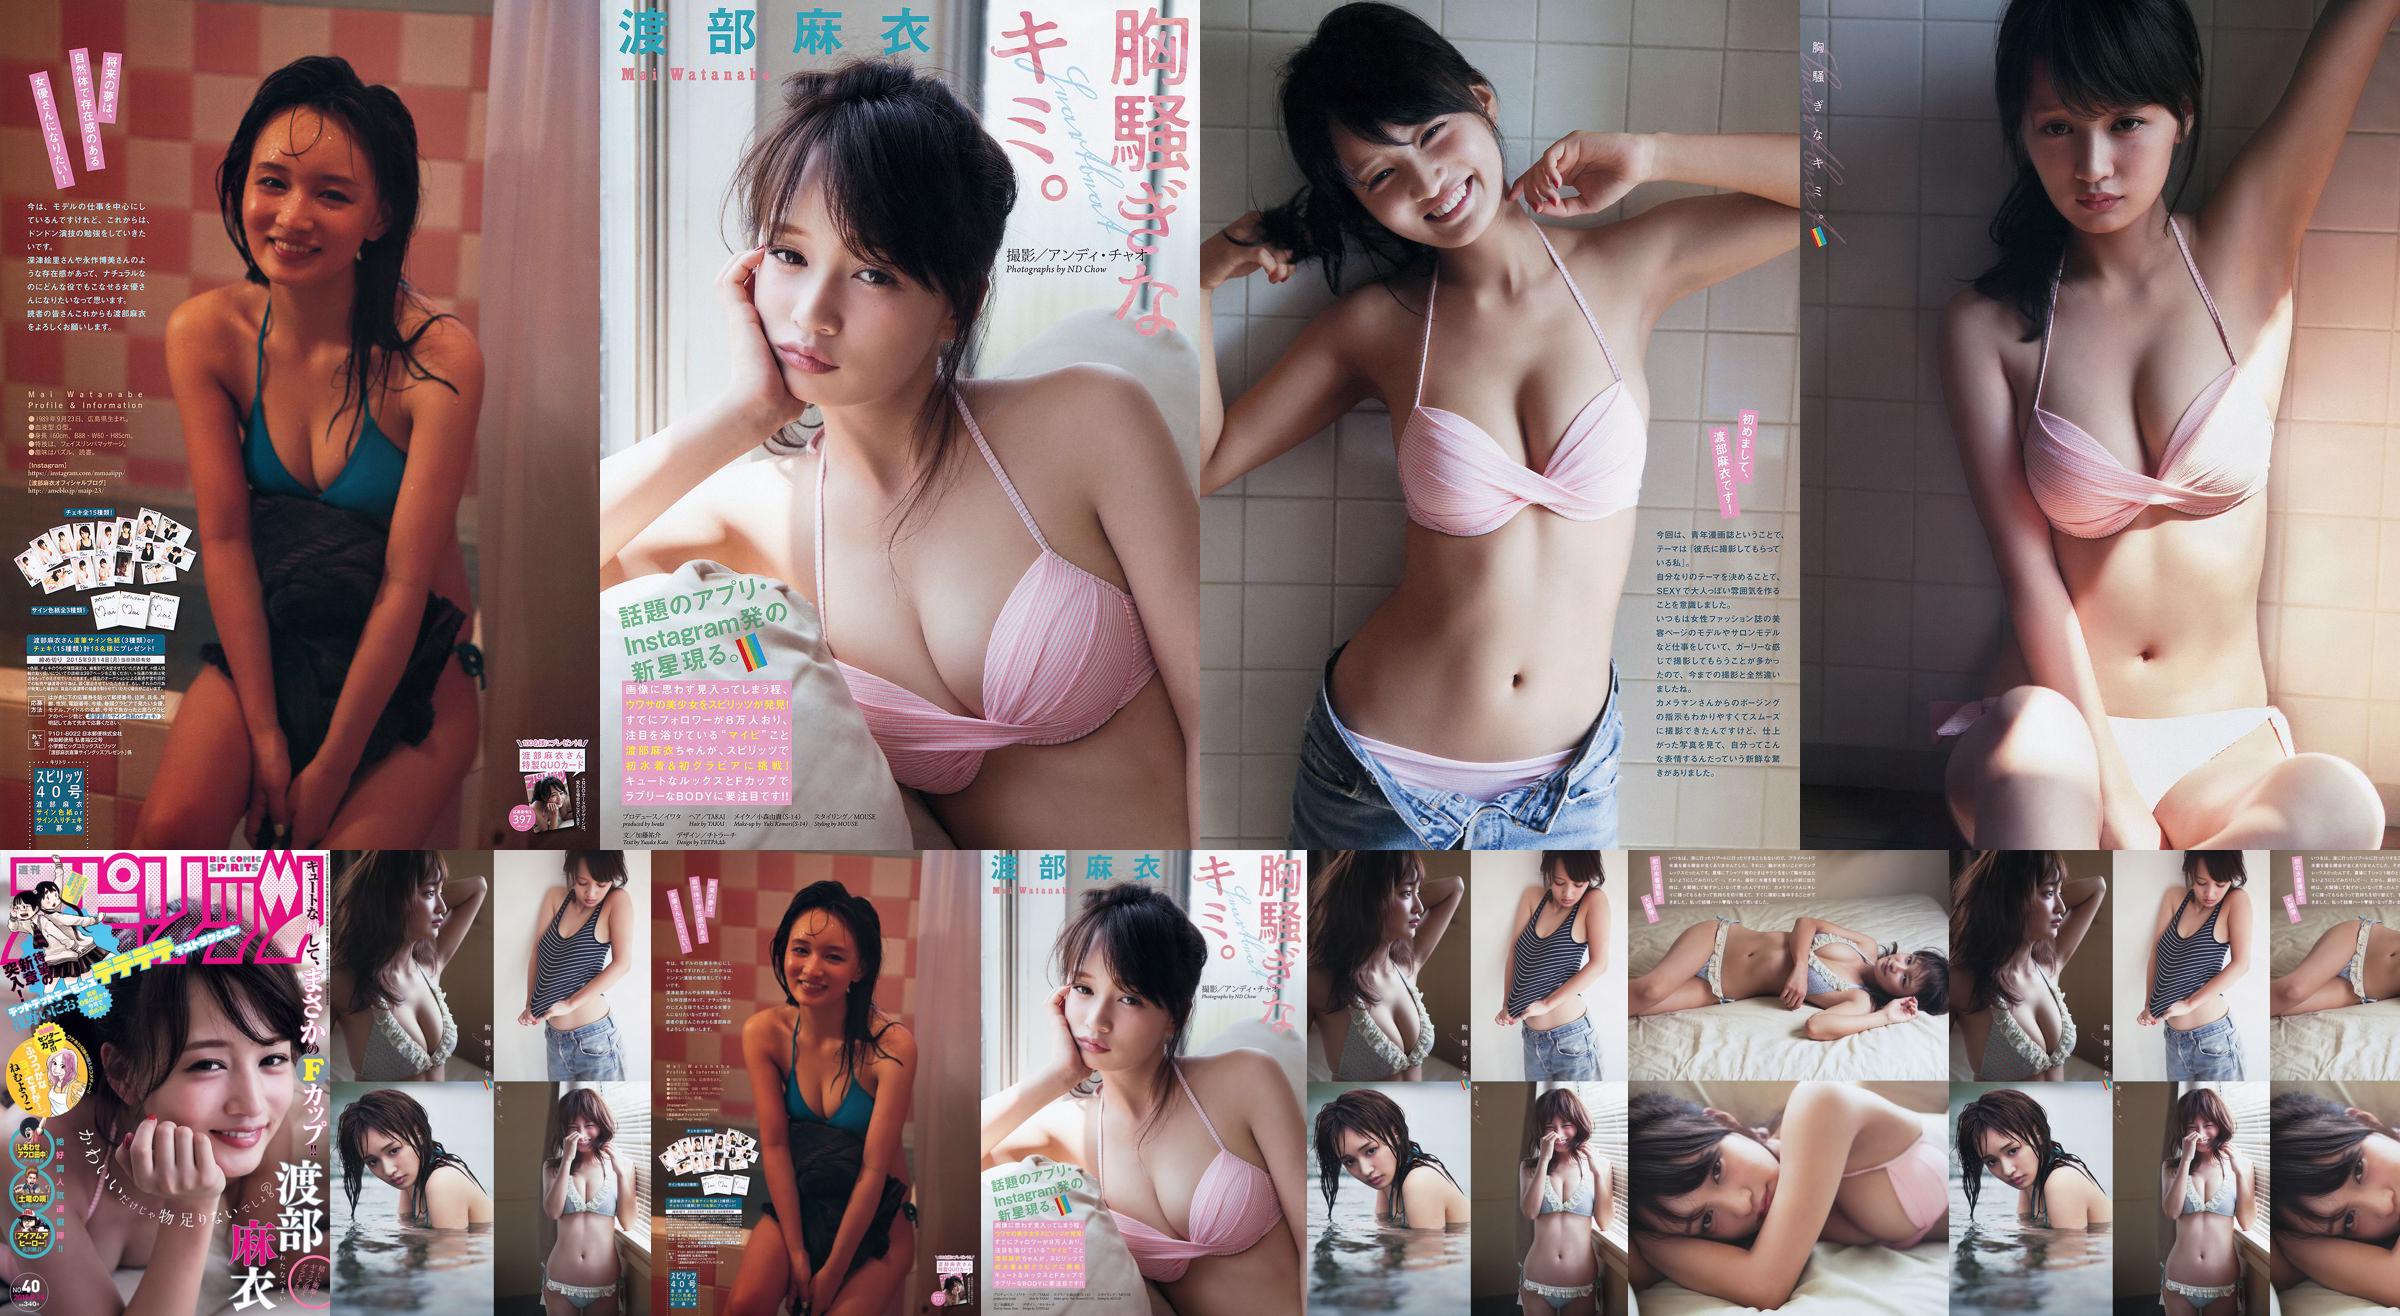 [Wekelijkse Big Comic Spirits] Watanabe Mai 2015 No.40 Photo Magazine No.778ea0 Pagina 37